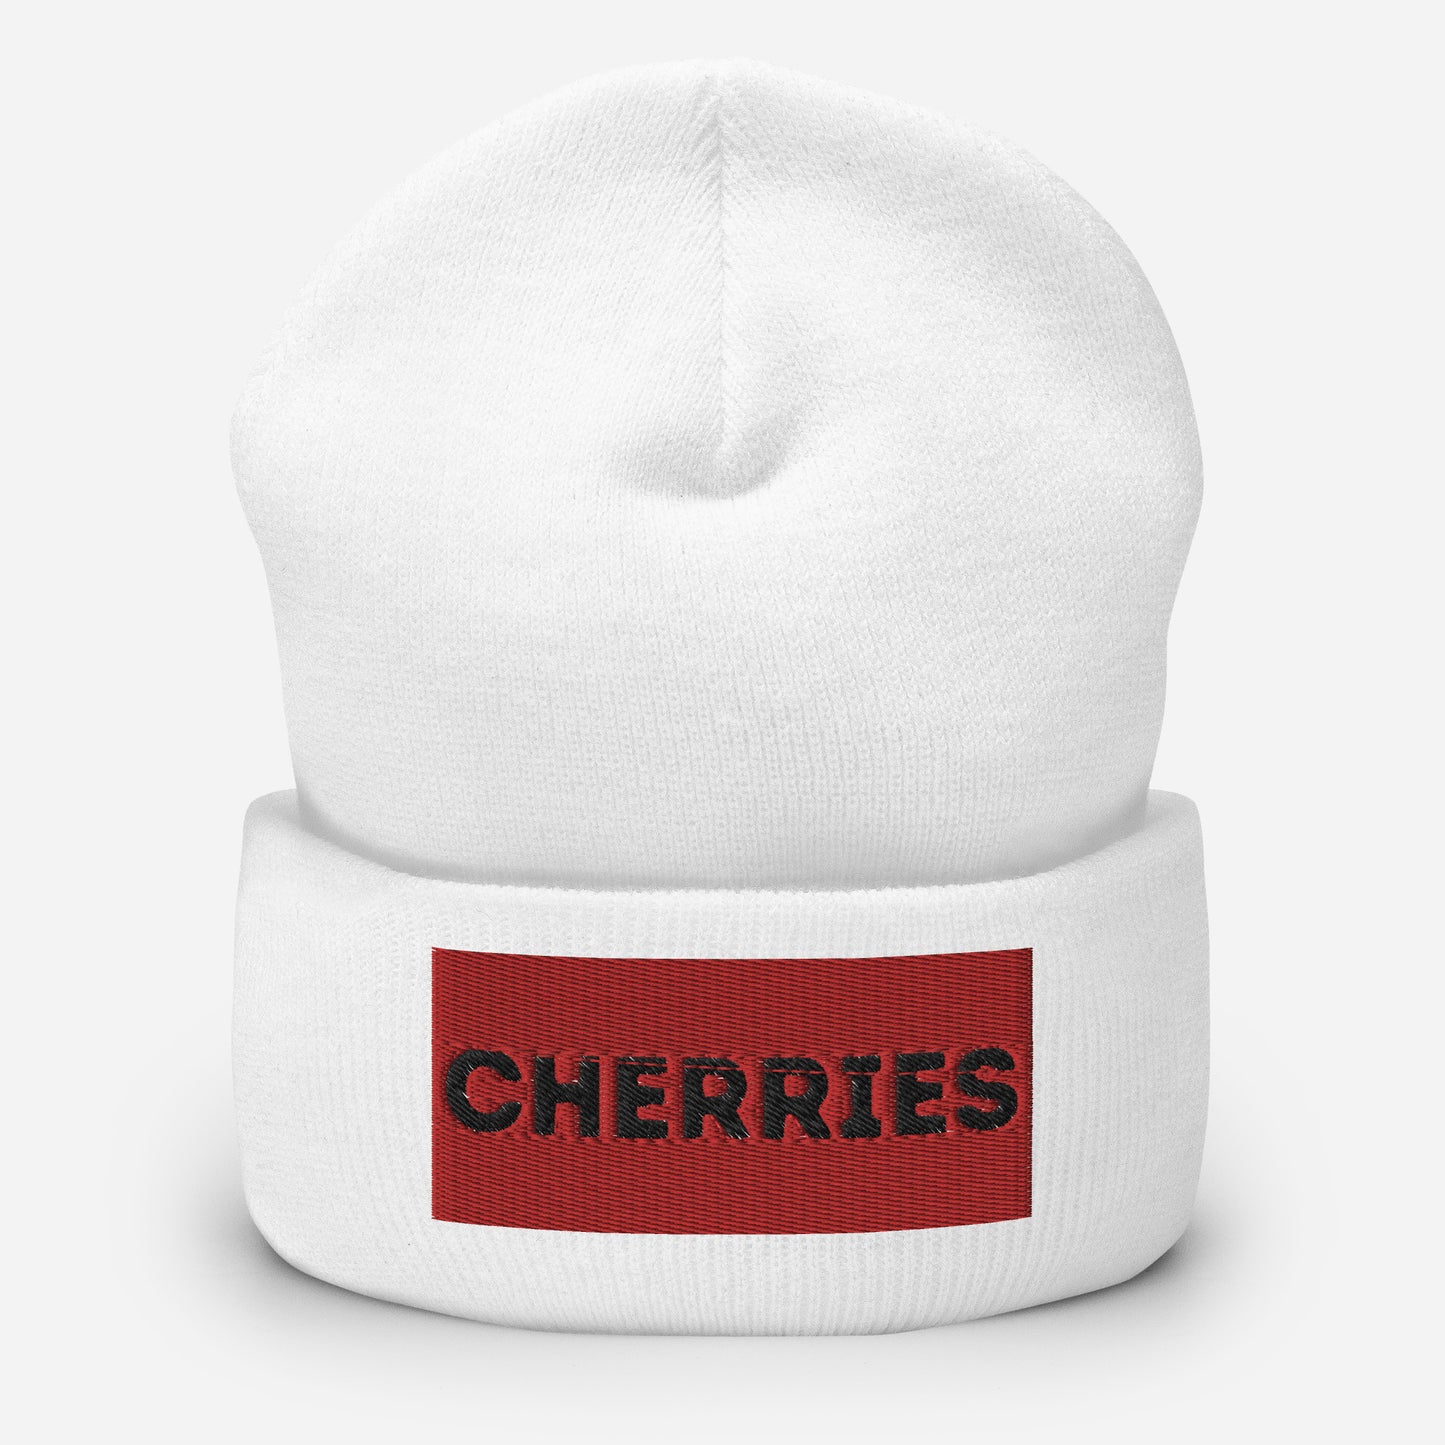 Cherries Cuffed Beanie Hat